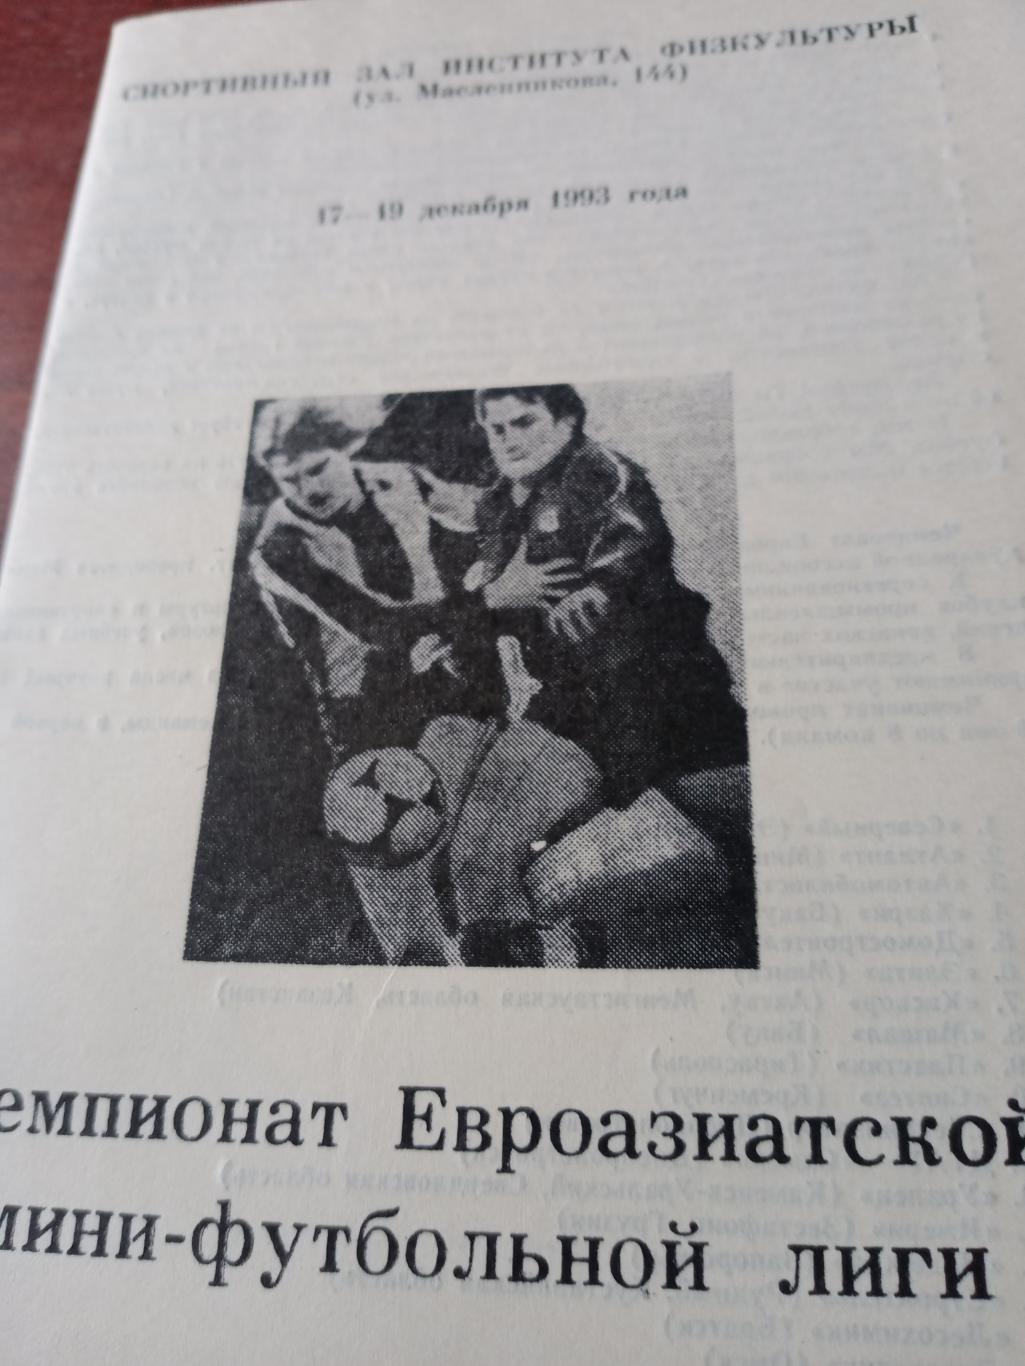 Чемпионат Евроазиатской мини-футбольной лиги. Омск, 1993 год